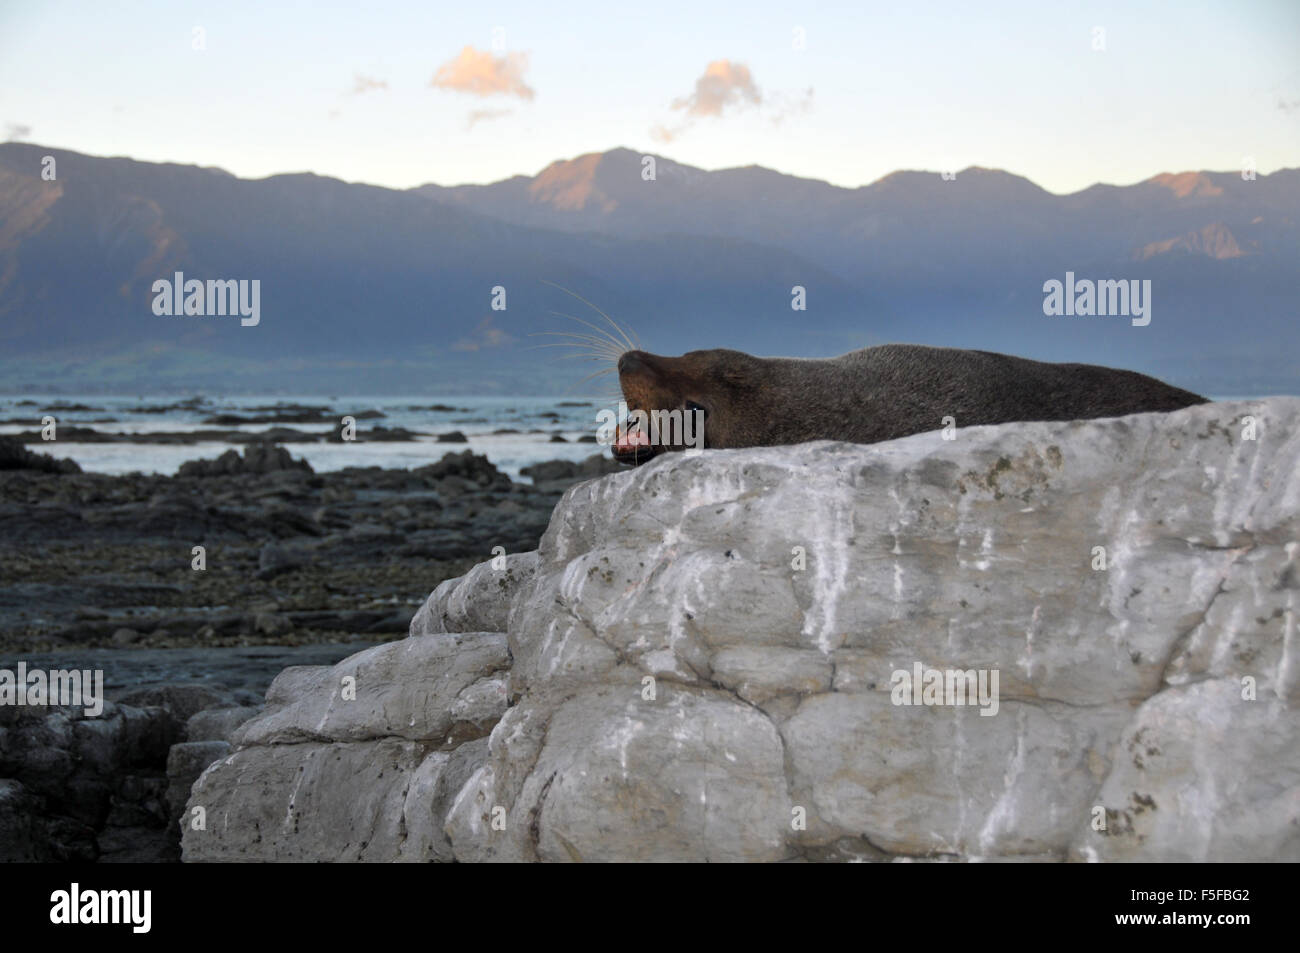 New Zealand fur seal or kekeno, Arctocephalus forsteri, Kaikoura Peninsula, Kaikoura, South Island, New Zealand Stock Photo